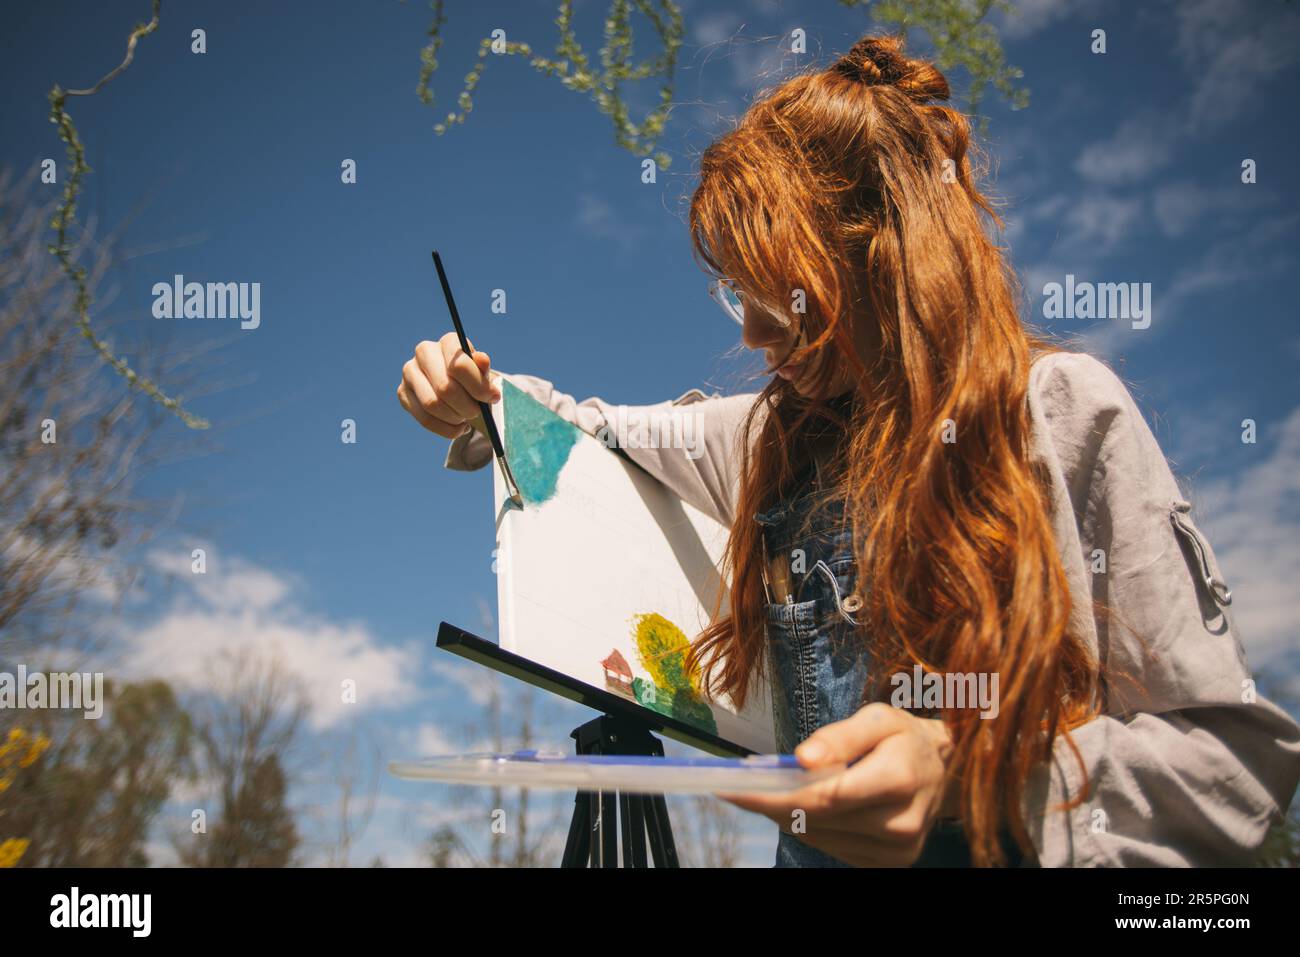 La ragazza dello zenzero sta dipingendo su un cavalletto con un pennello in mano mentre sta in piedi al parco Foto Stock